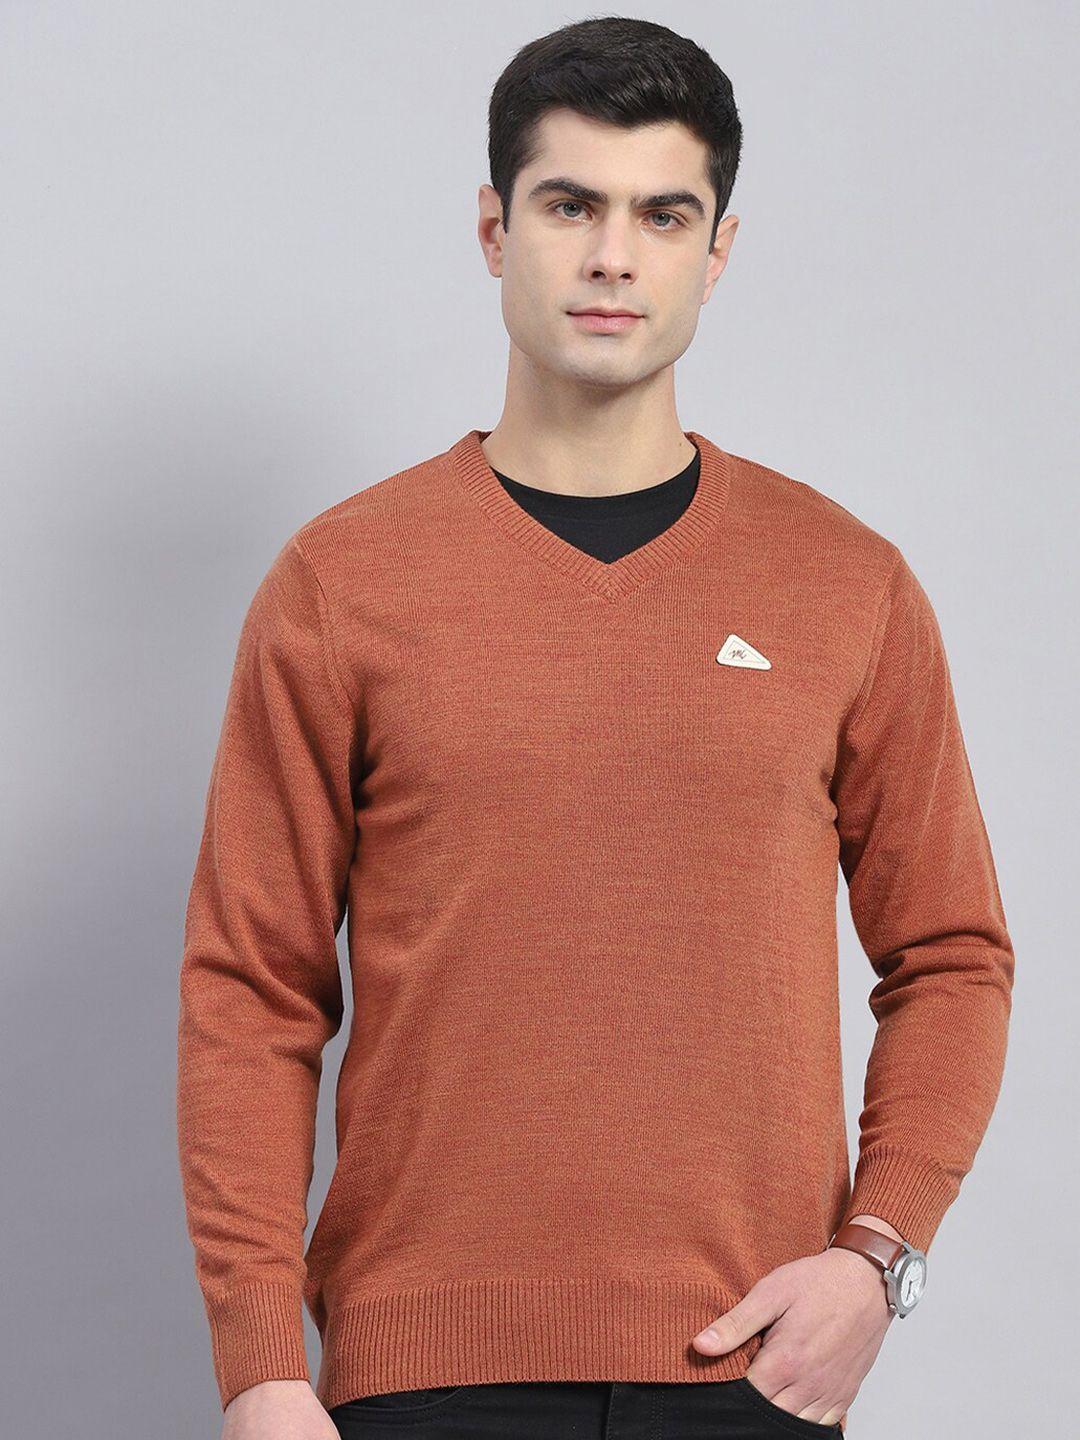 monte-carlo-v-neck-pullover-sweater